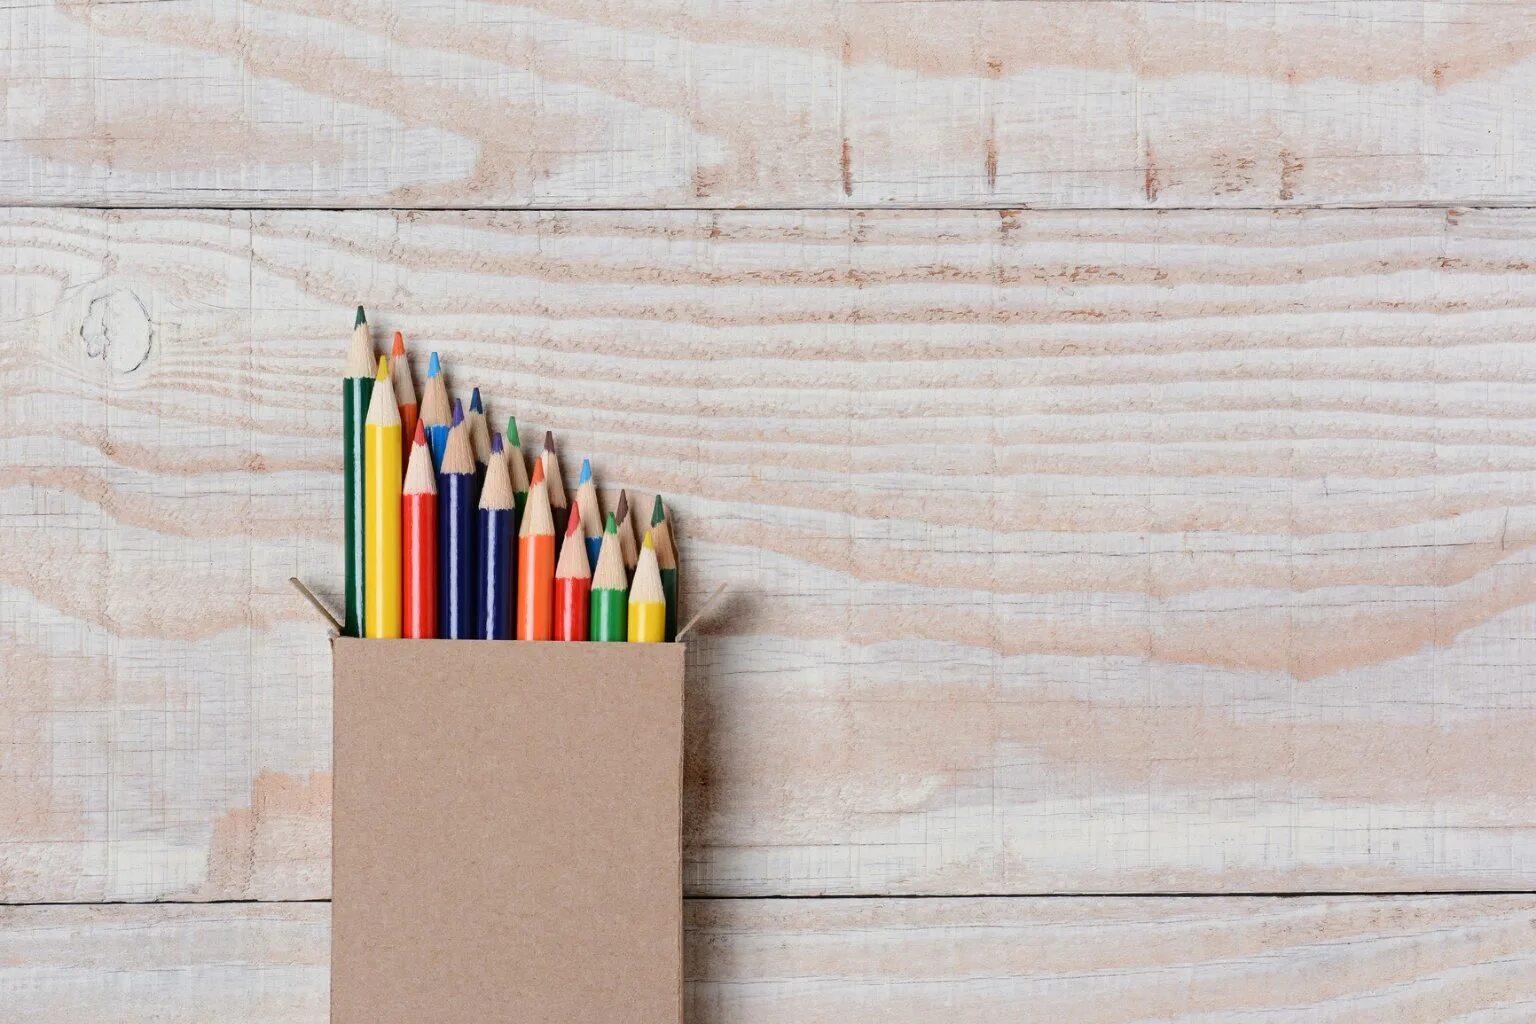 Карандаши на столе. Бумага и цветные карандаши. Бумага и цветные карандаши на столе. Цветные карандаши на столе.